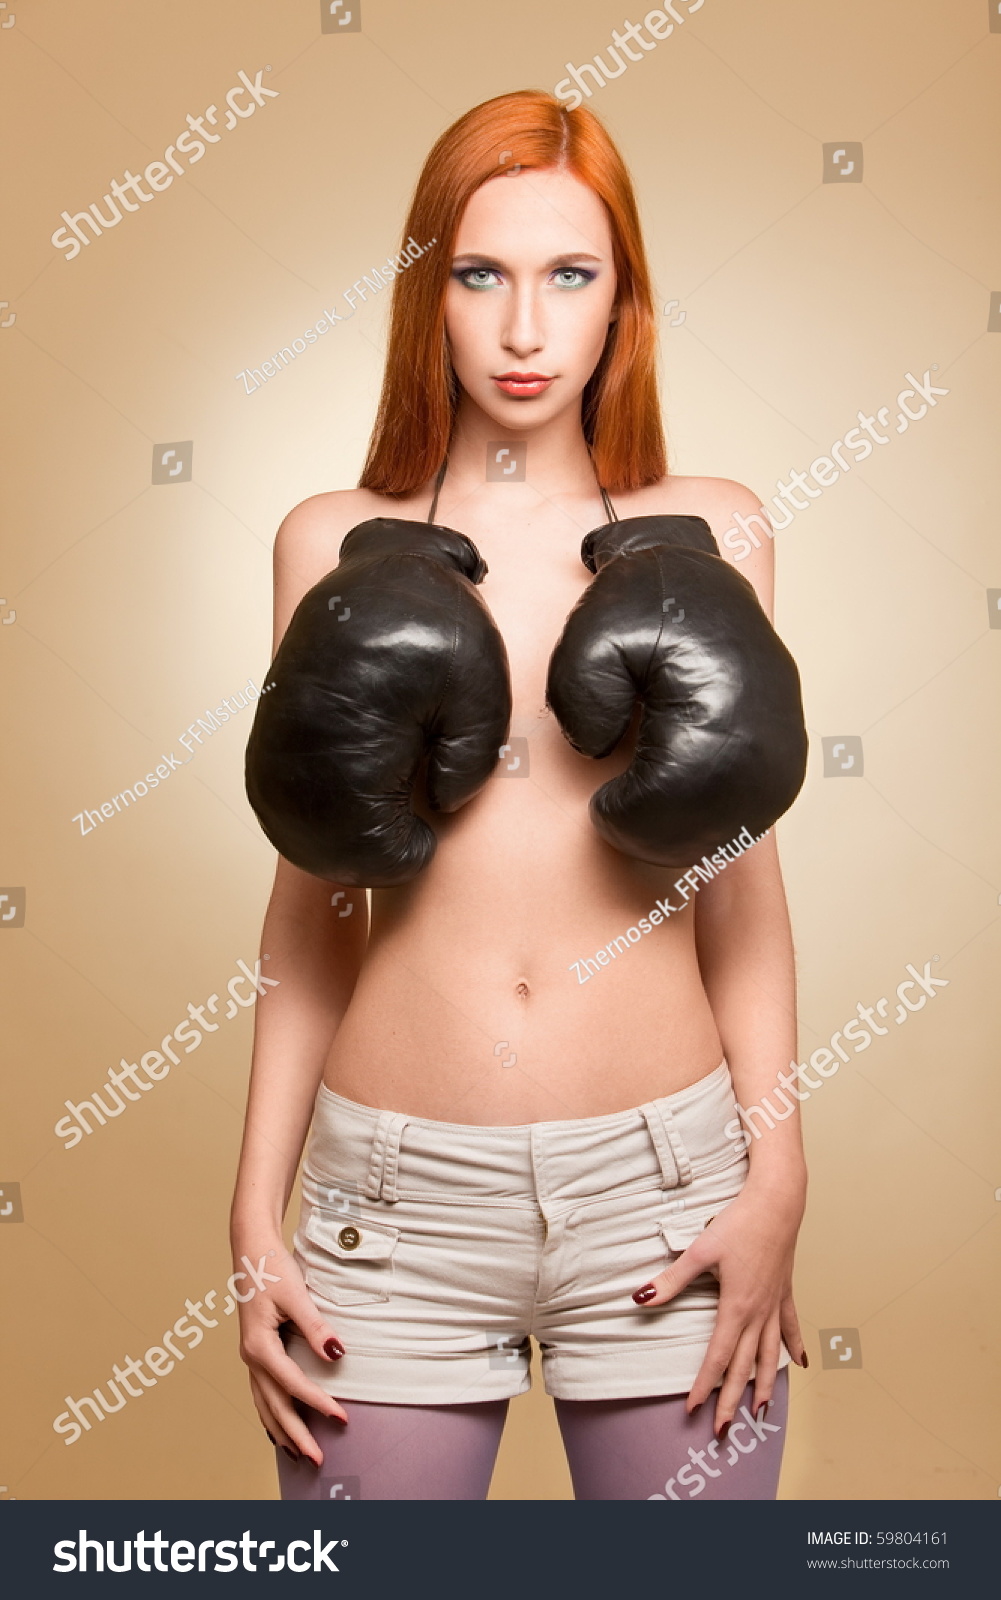 Boxing Nude Women 25